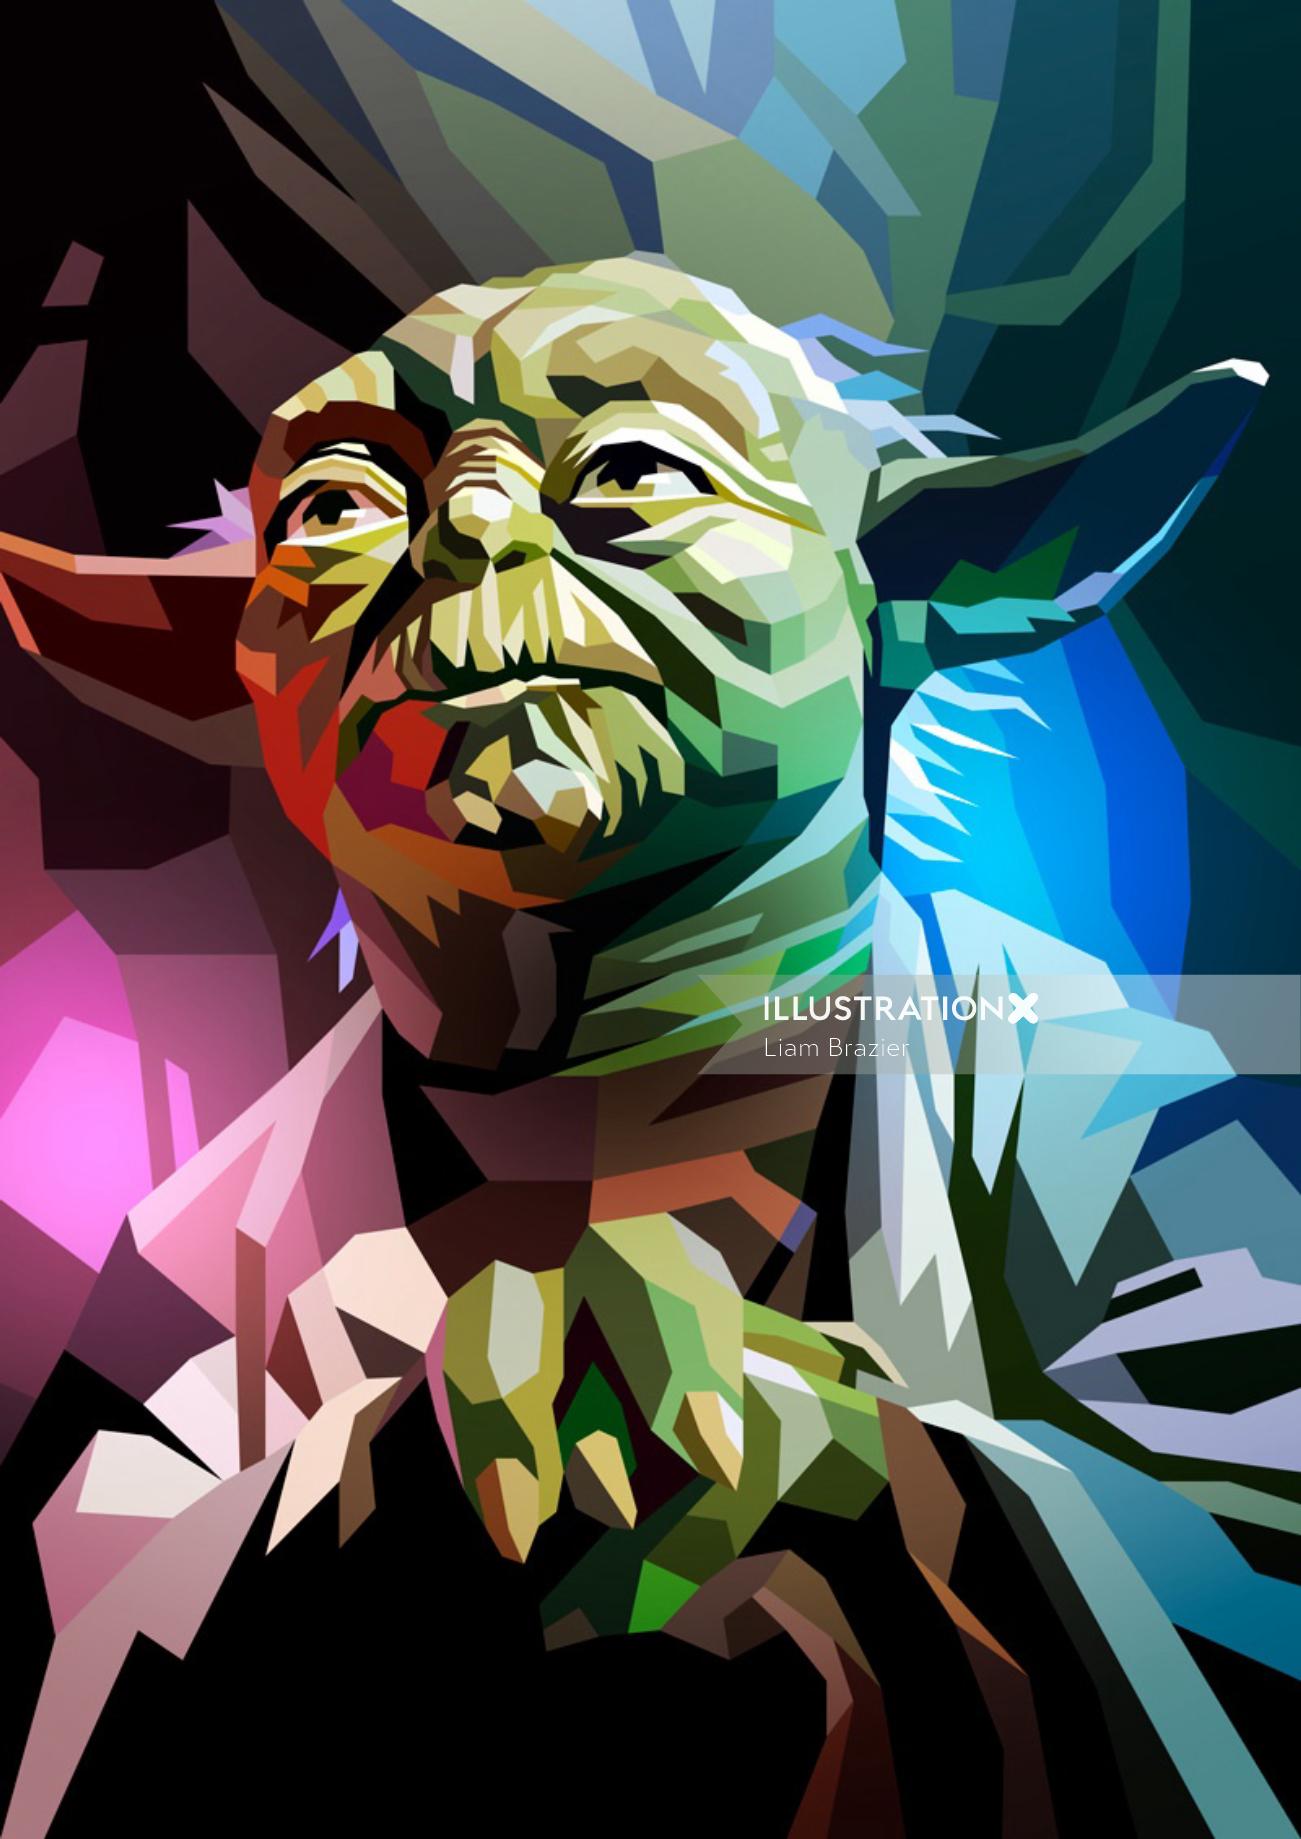 Yoda Character in Star Wars